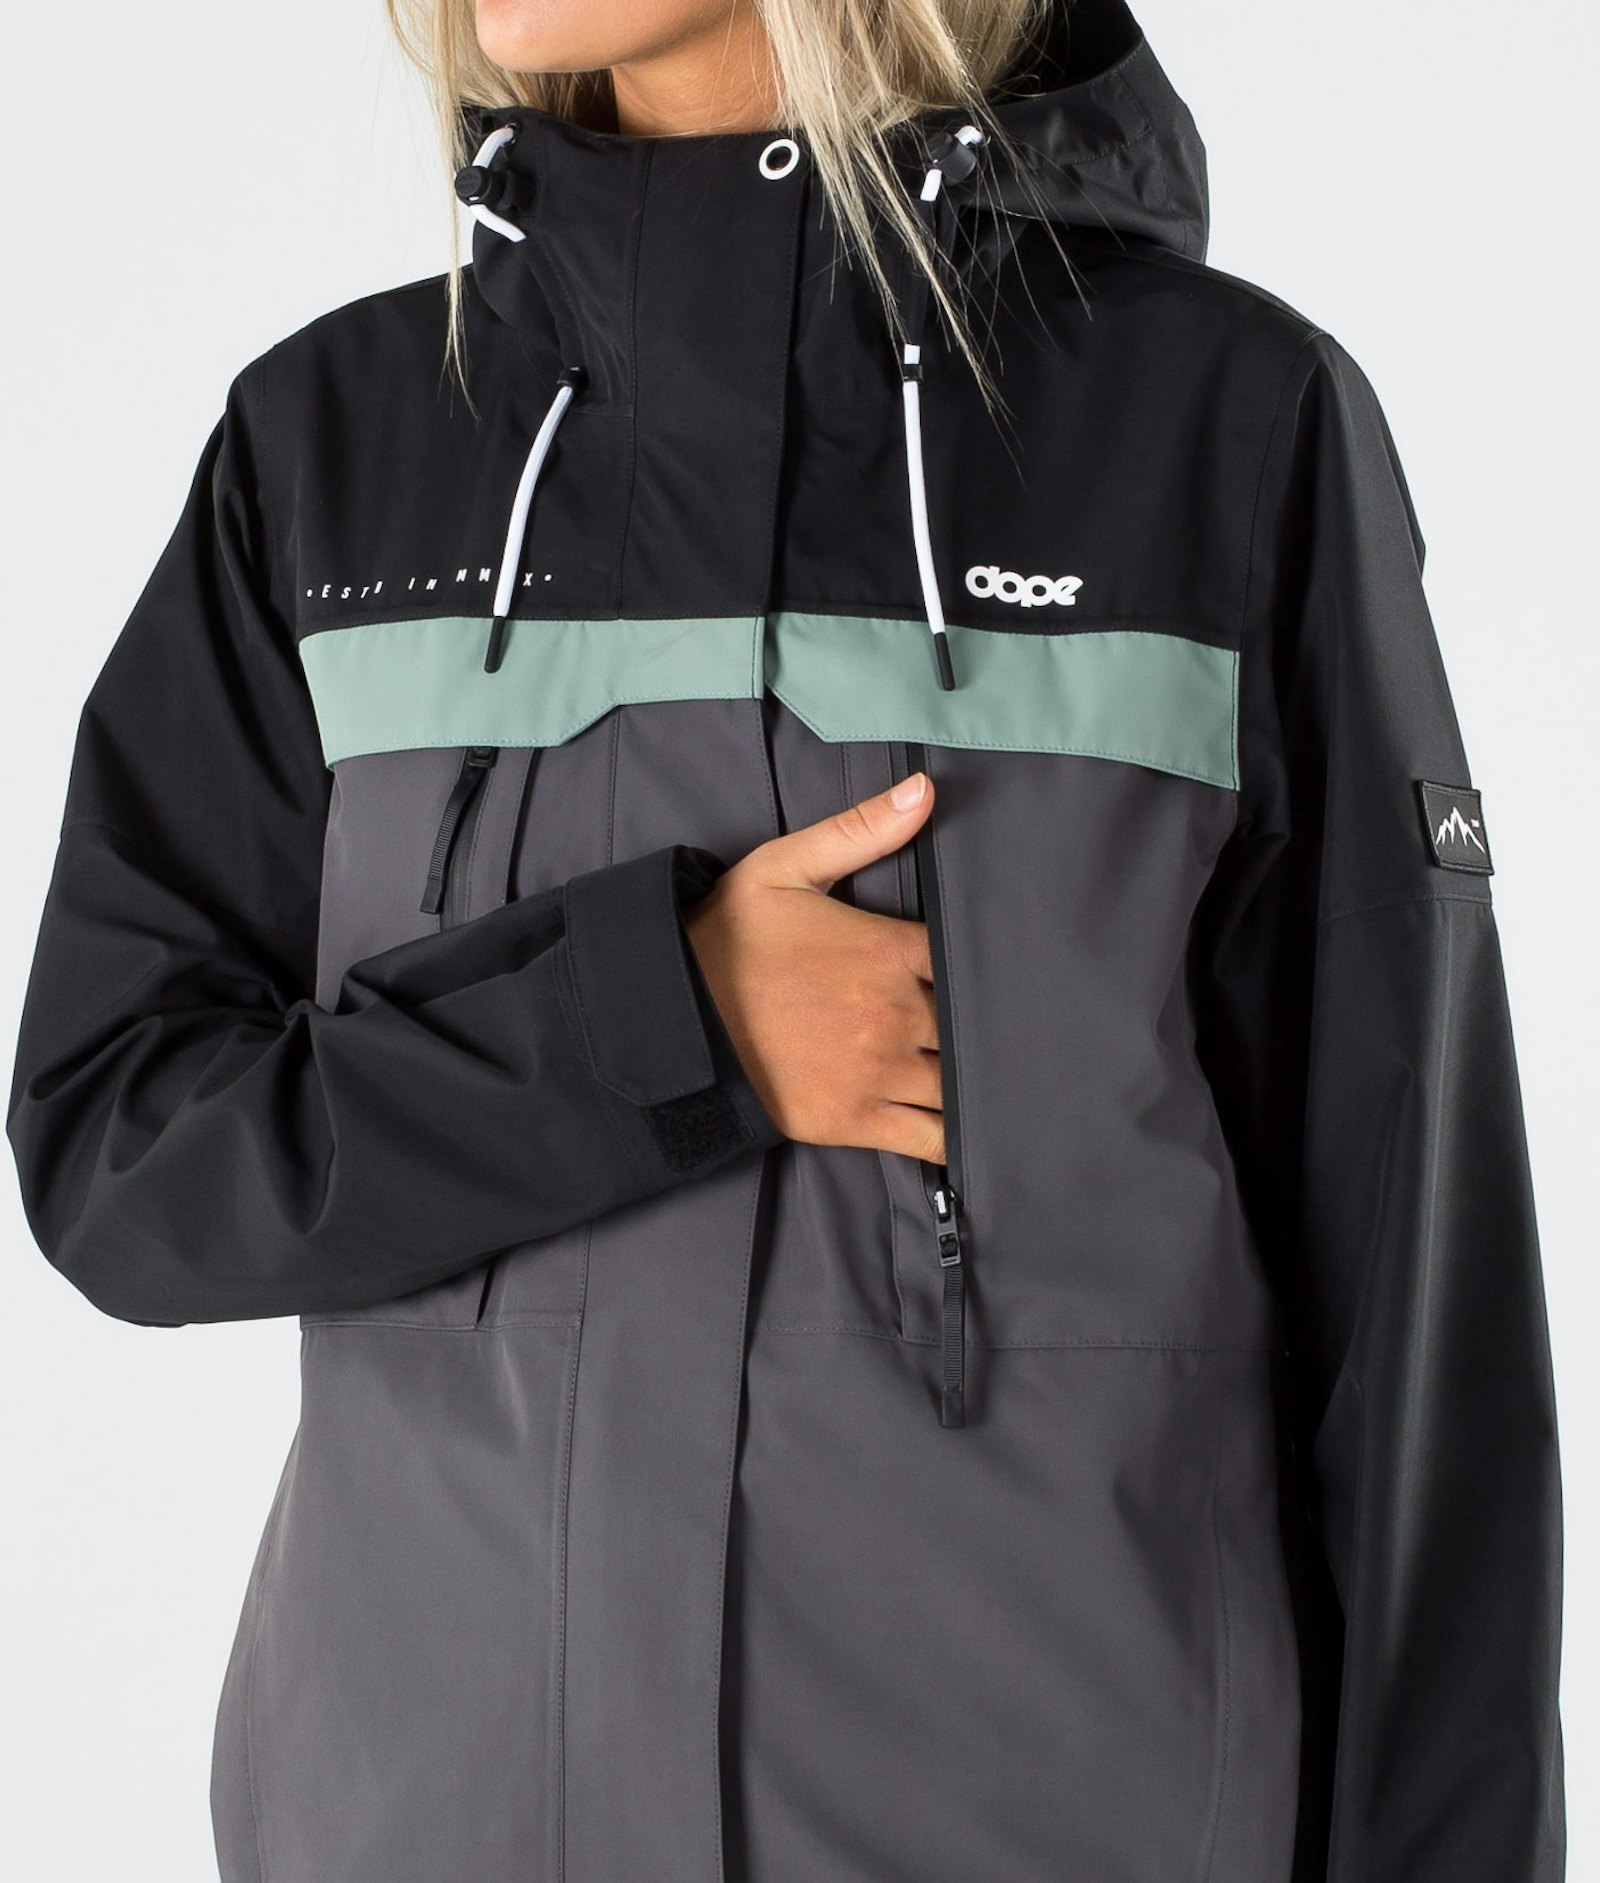 Trekker W 2020 Outdoor Jacket Women Black/Faded Green/Blackened Pearl, Image 6 of 10